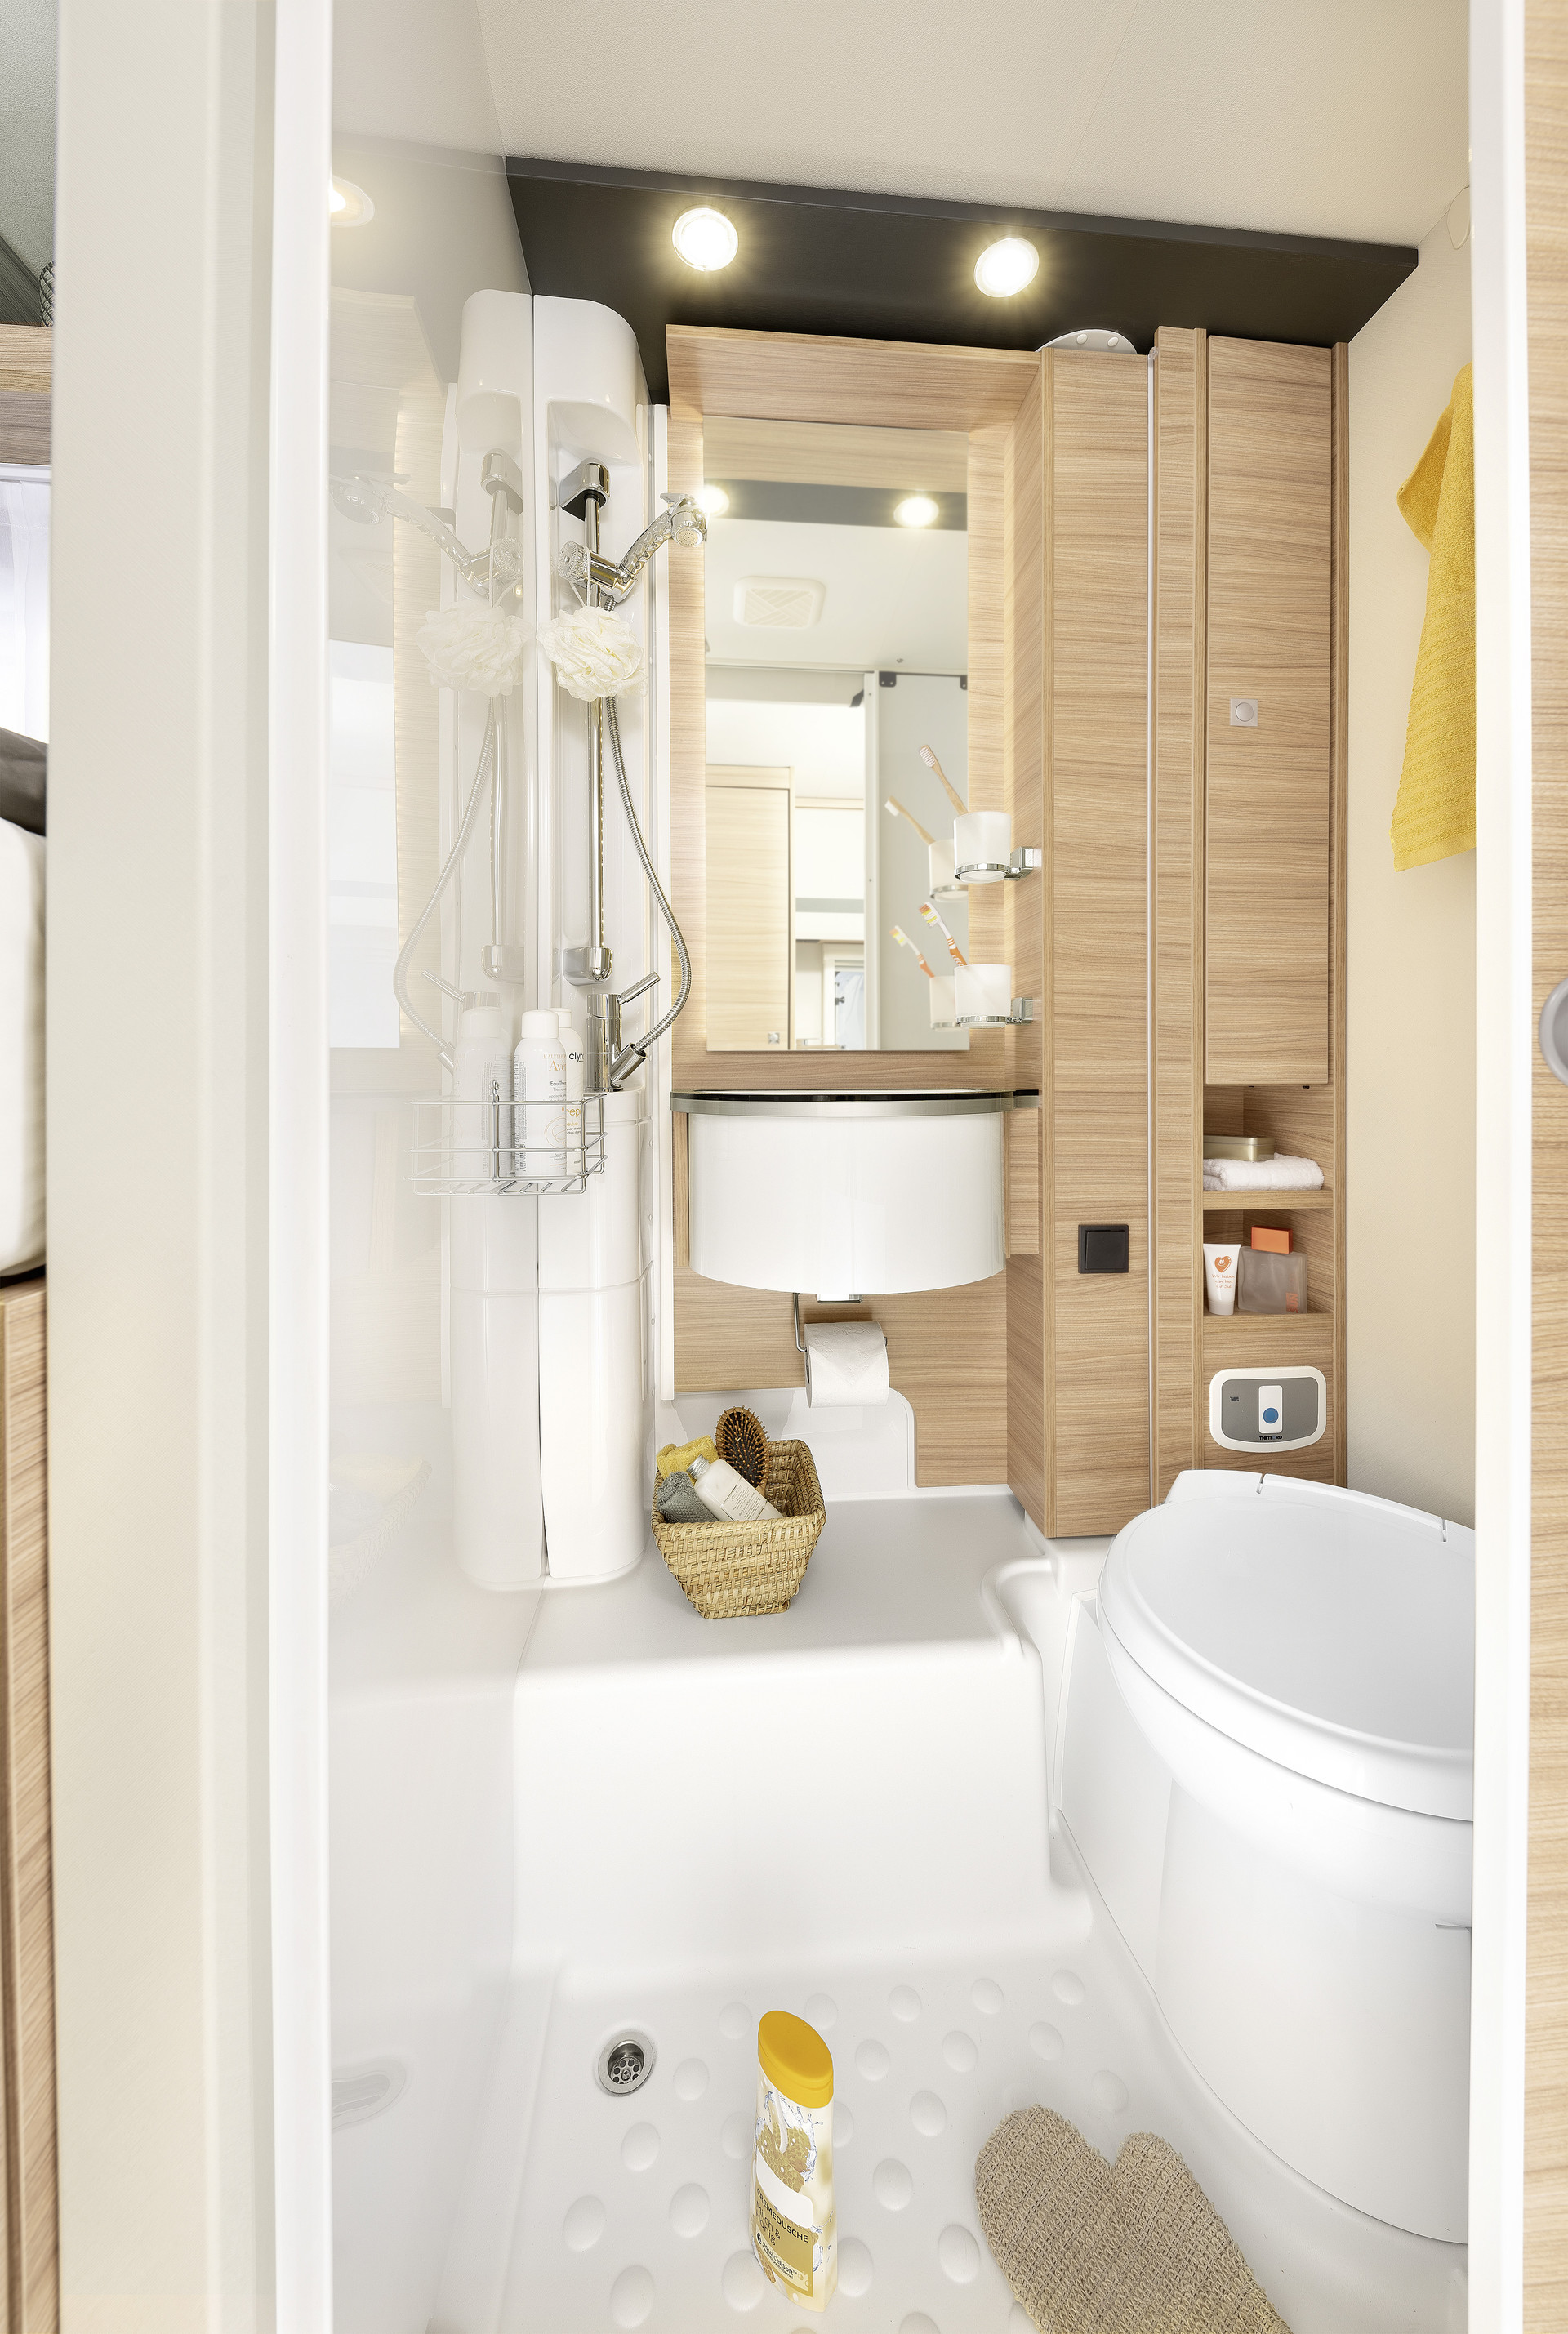 Le T / I 6 dispose d’une grande cabine de douche séparée, d’un lavabo commodément accessible et de beaucoup d’espace de rangement • T/I 6